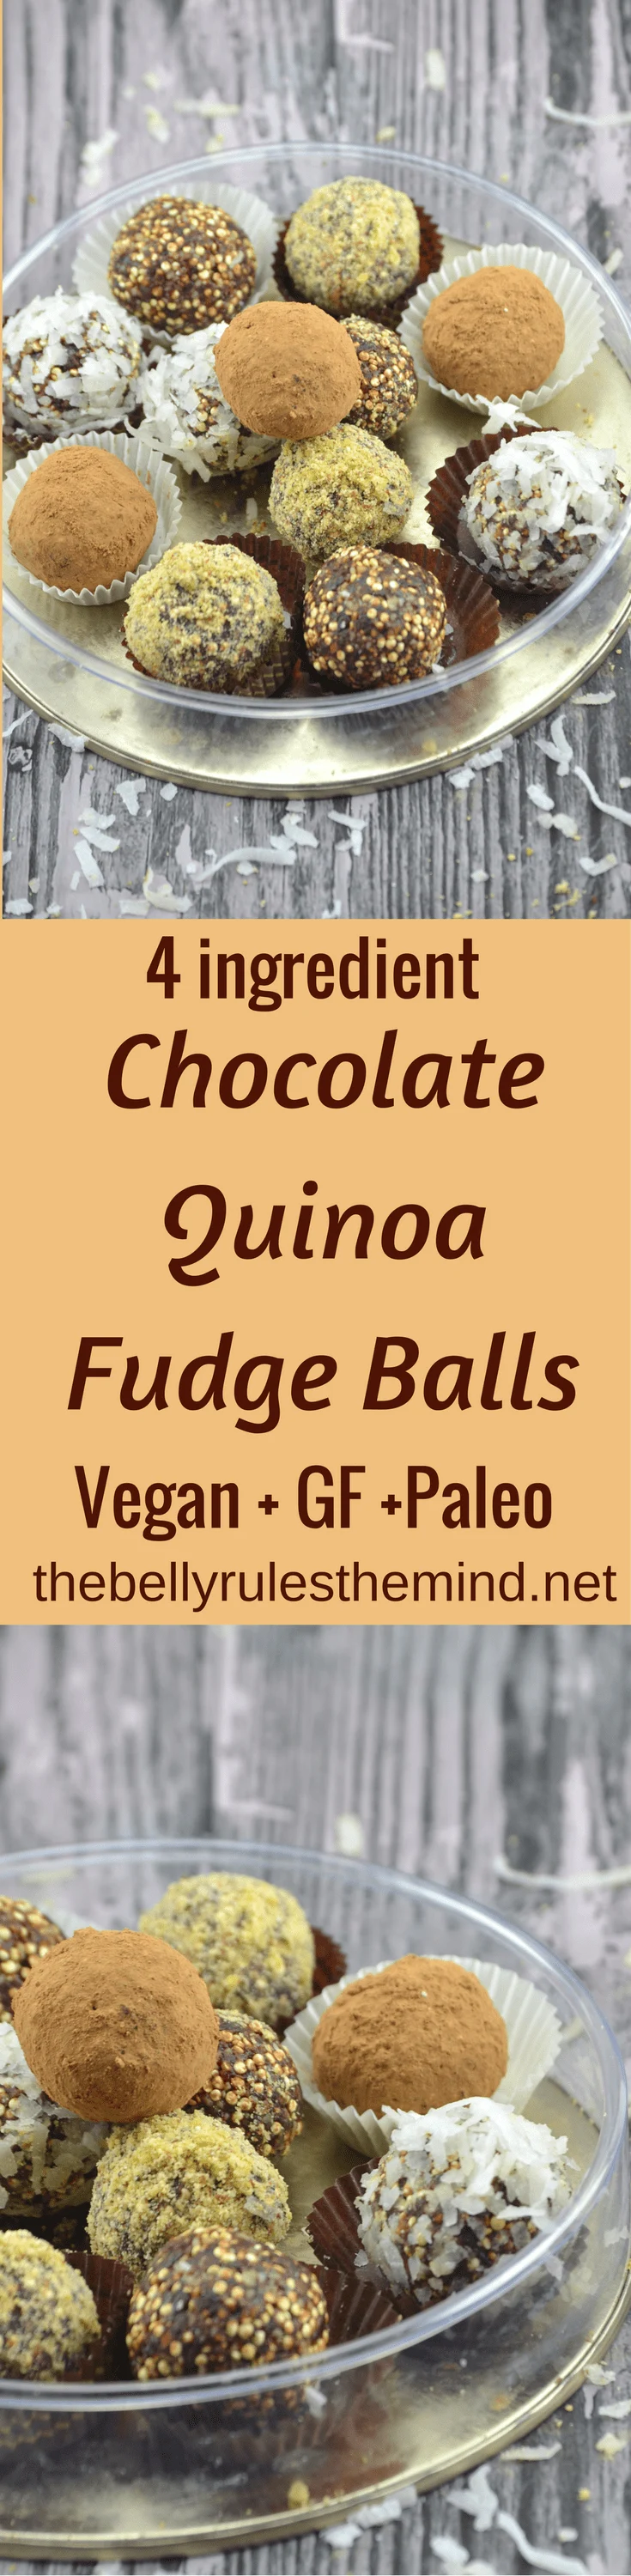 Chocolate Quinoa Fudge Balls